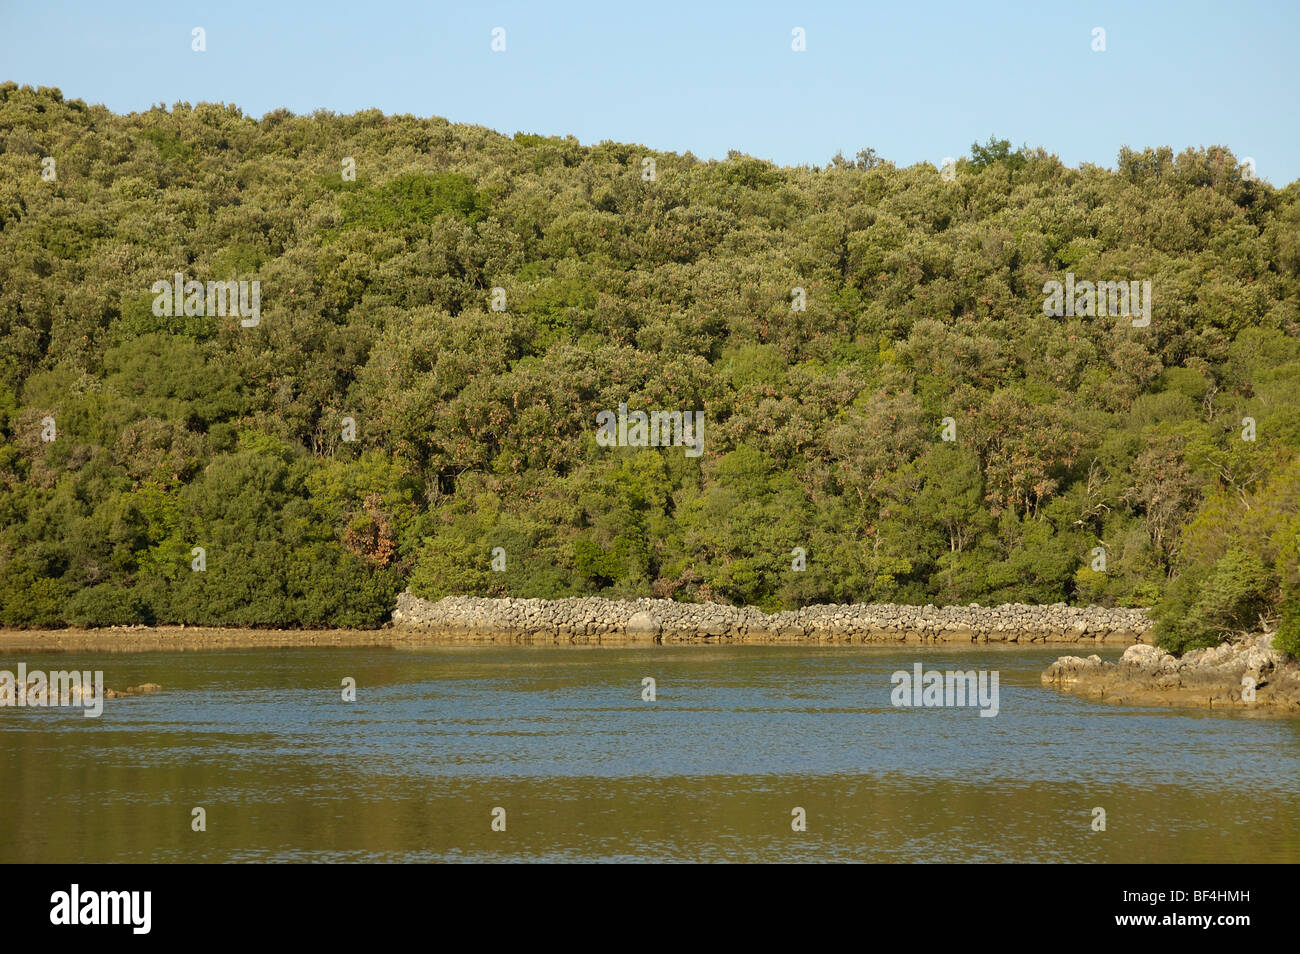 La encina (Quercus ilex) Bosque, muro de piedra seca en la costa de la isla de Cres, Croacia Foto de stock